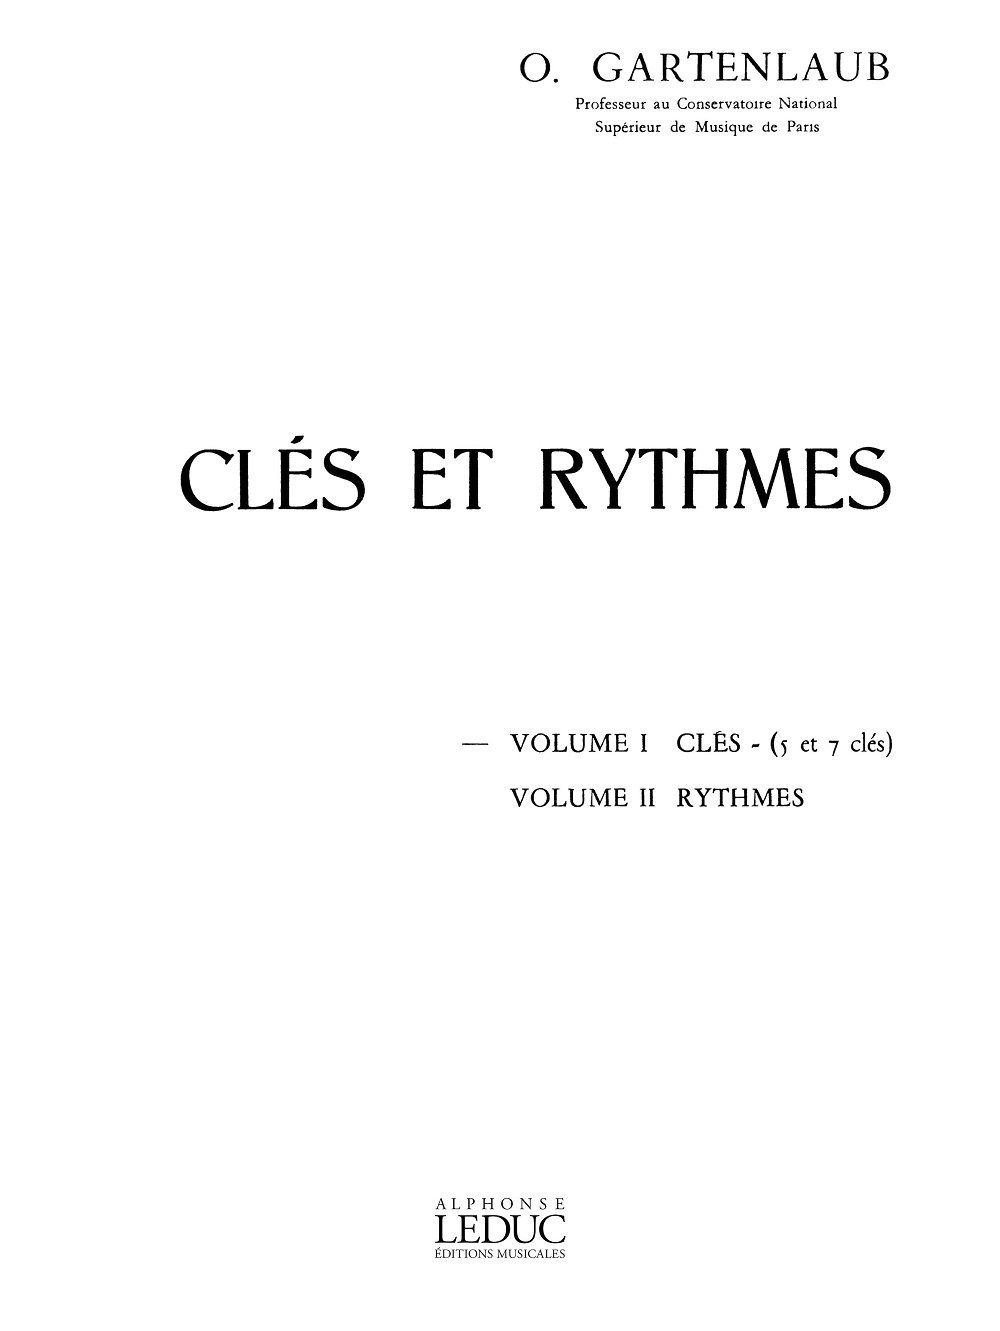 Clés et rythmes, volume 1, 5 clés et 7 clés